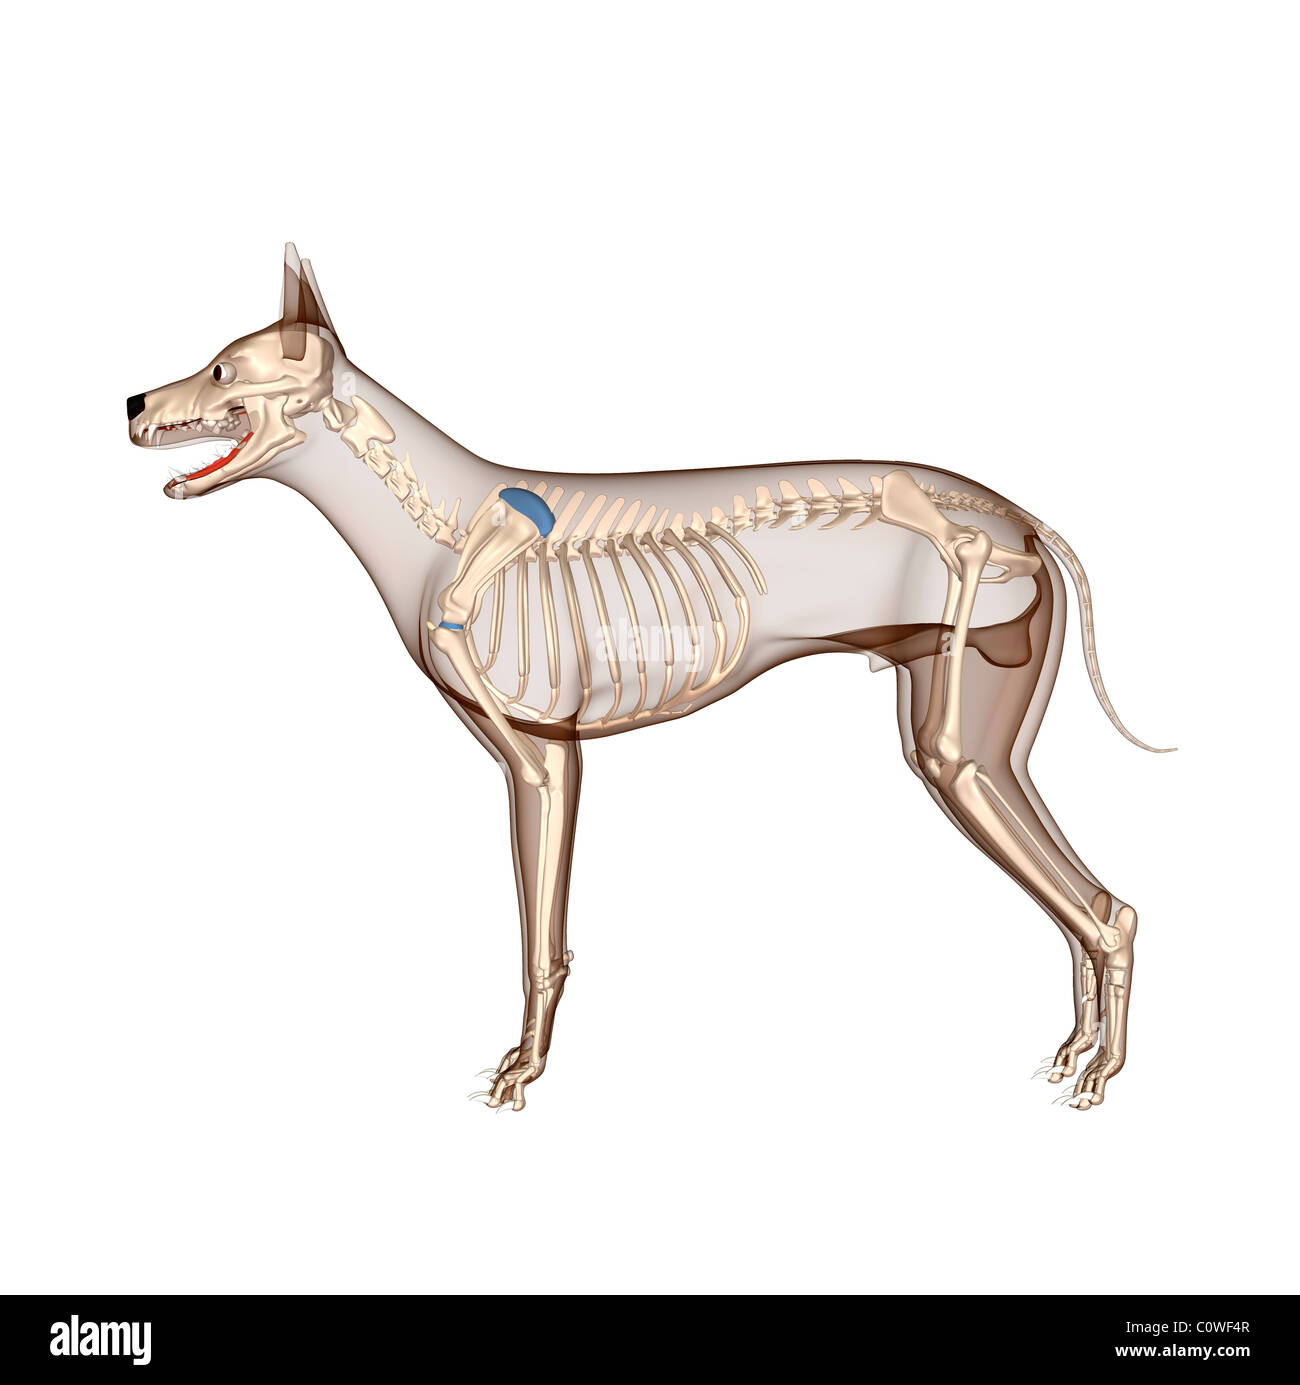 Anatomía del perro esqueleto con cuerpo transparente Foto de stock